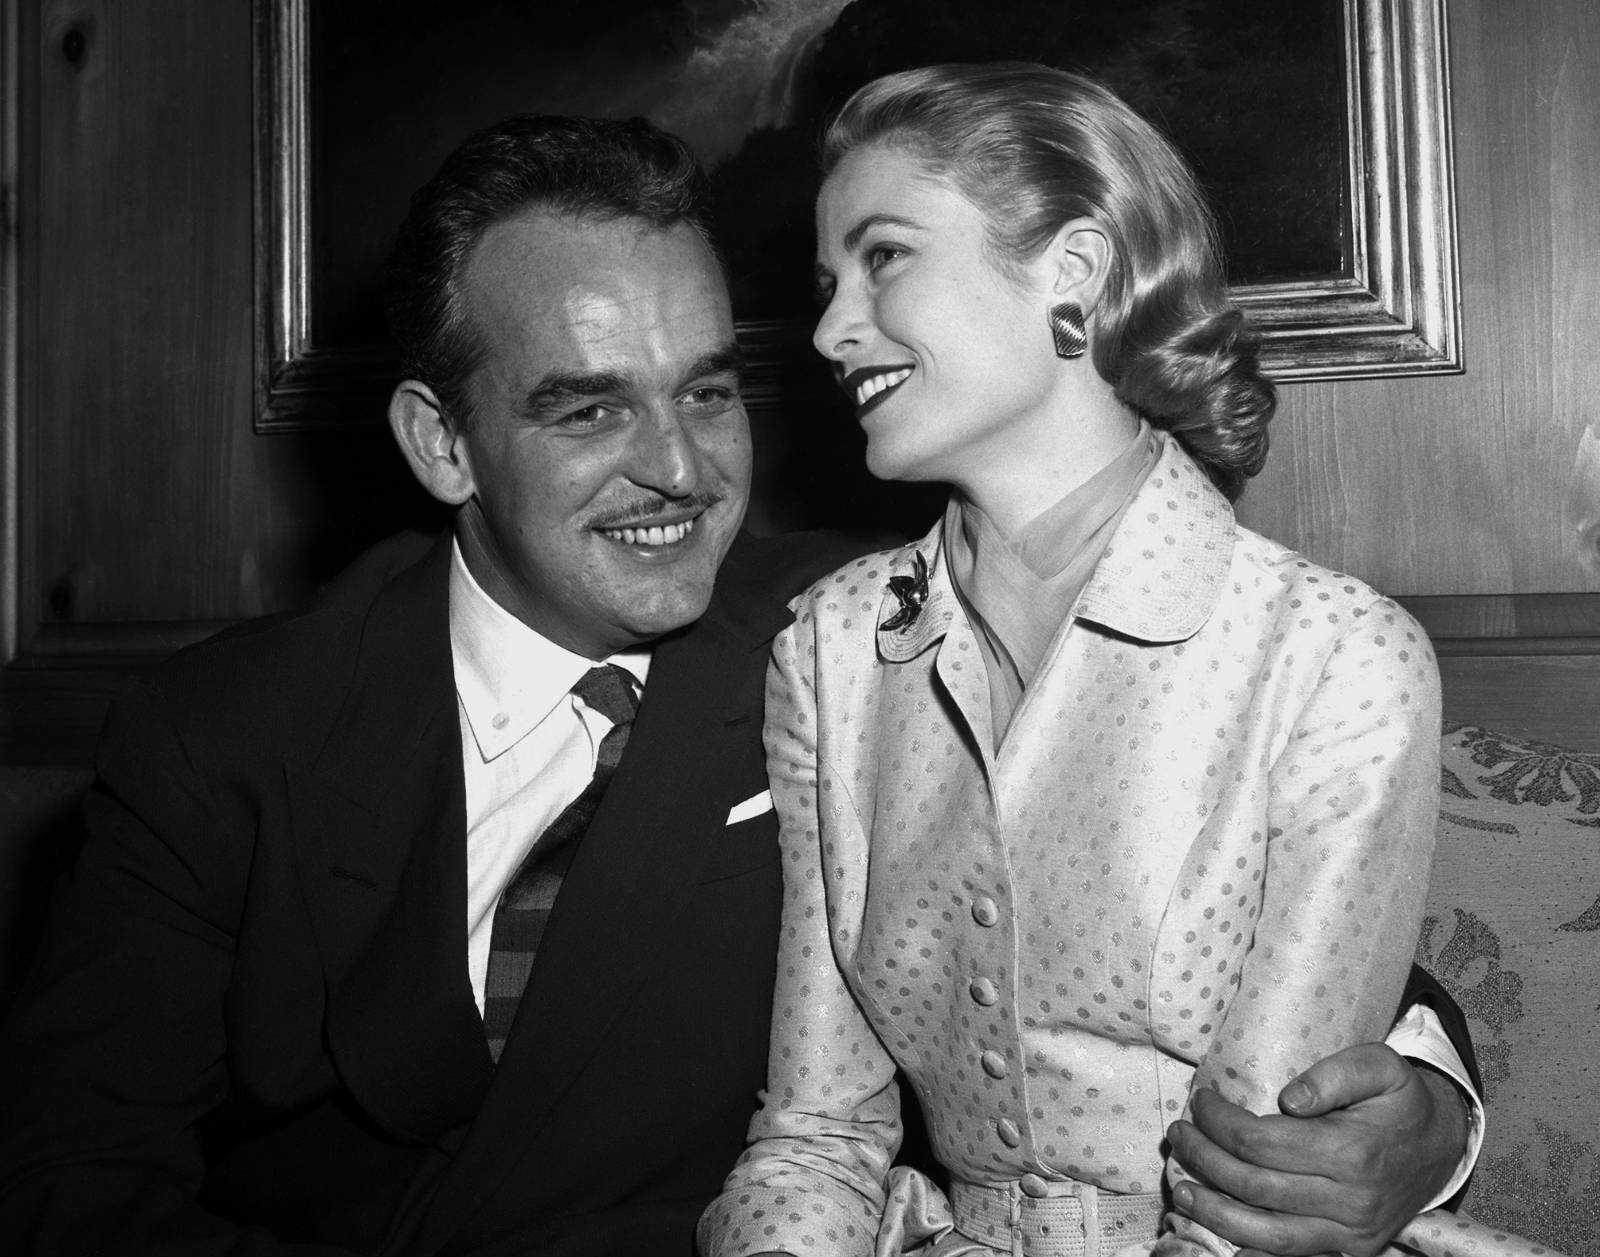 Po ogłoszeniu zaręczyn w 1956 r. / Fot. Getty Images